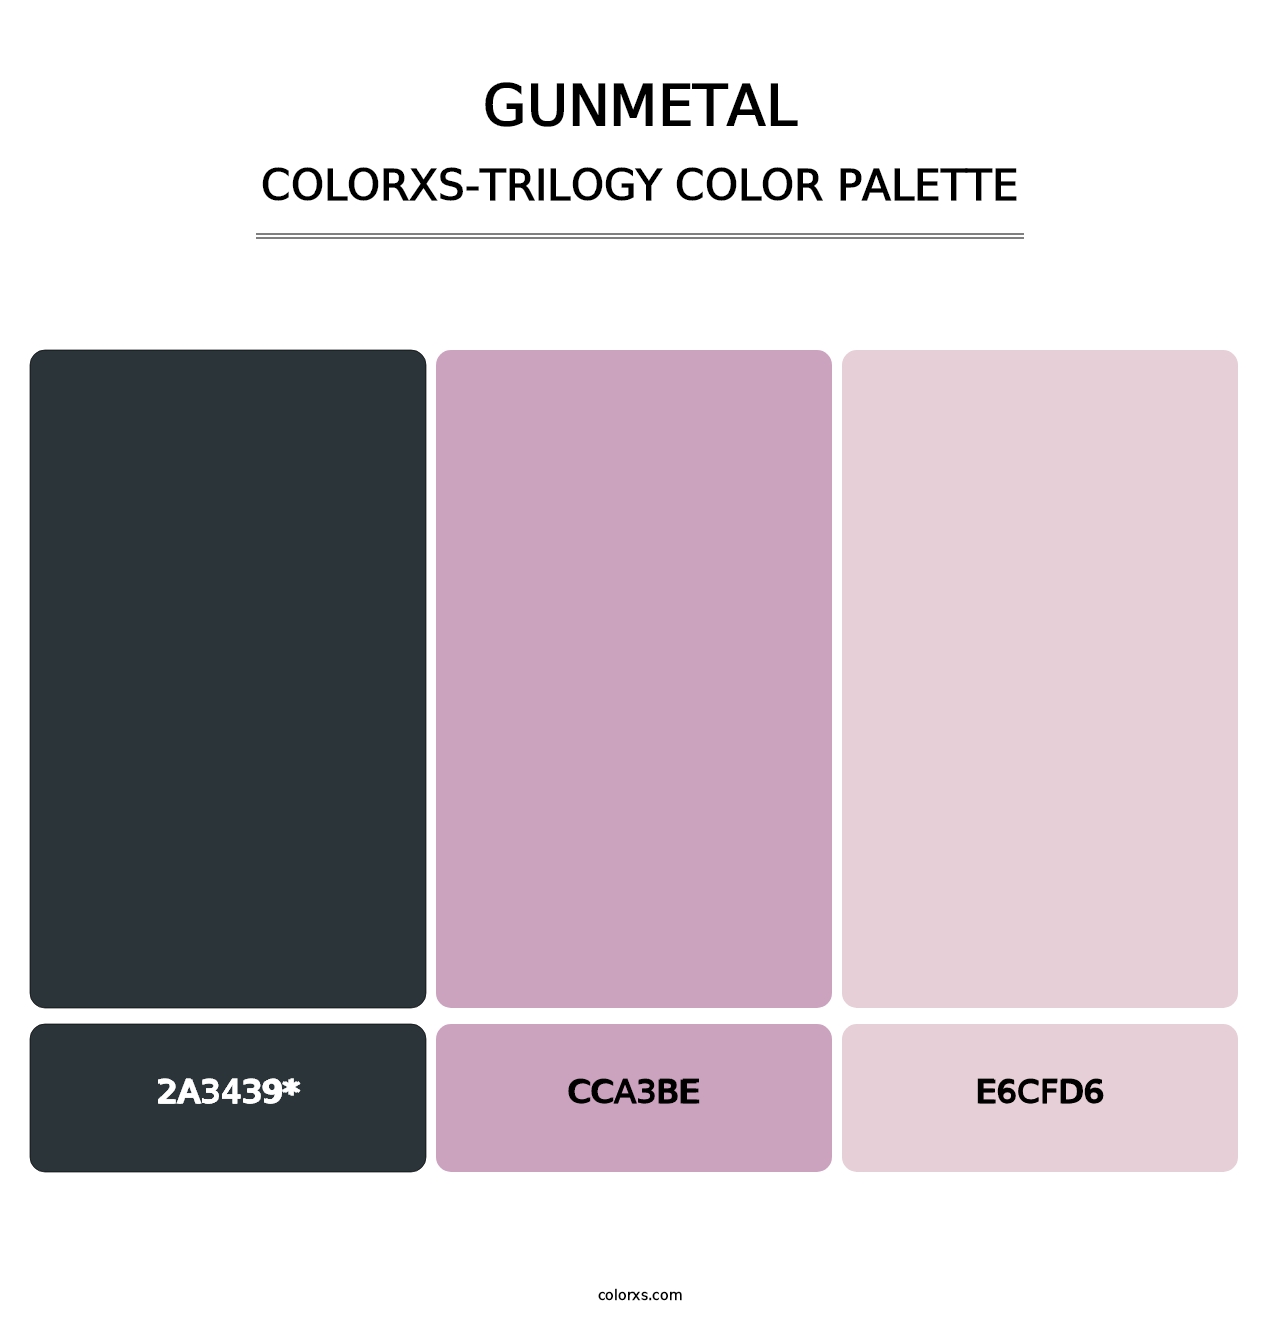 Gunmetal - Colorxs Trilogy Palette